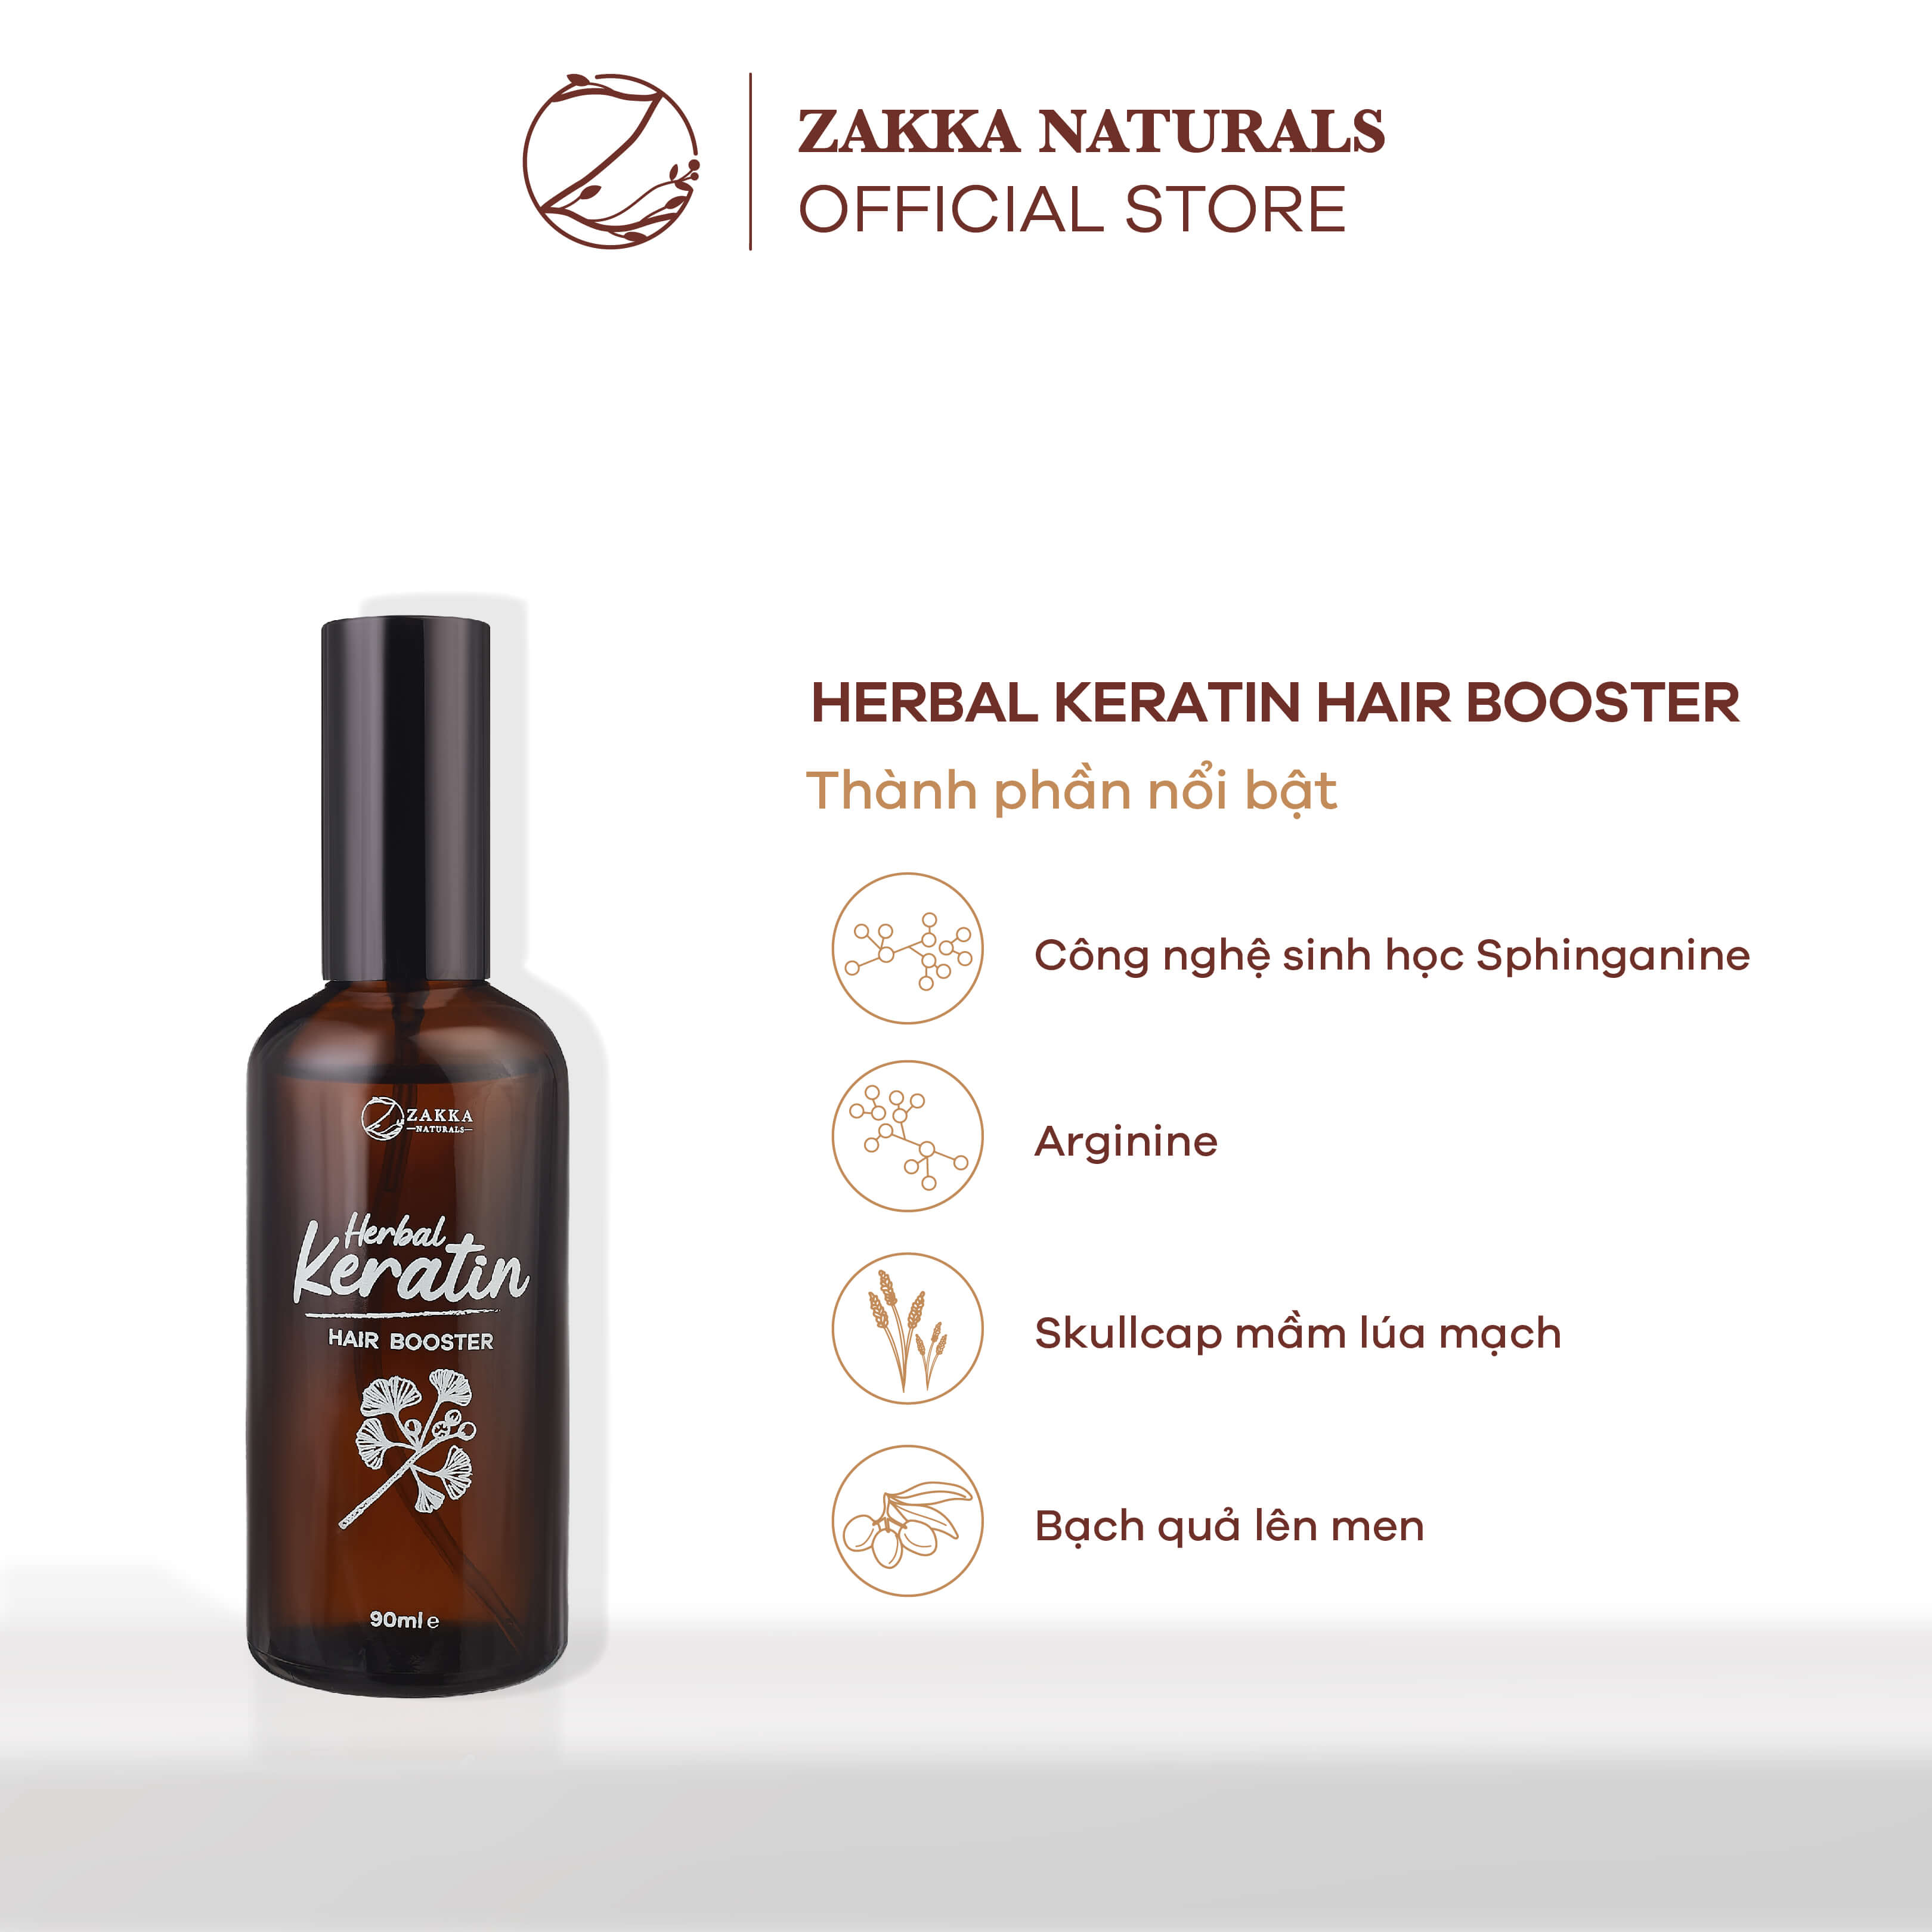 Tinh Chất Dưỡng Tóc Chắc Khoẻ Dạng Xịt Zakka Naturals Herbal Keratin Hair Booster 90ml